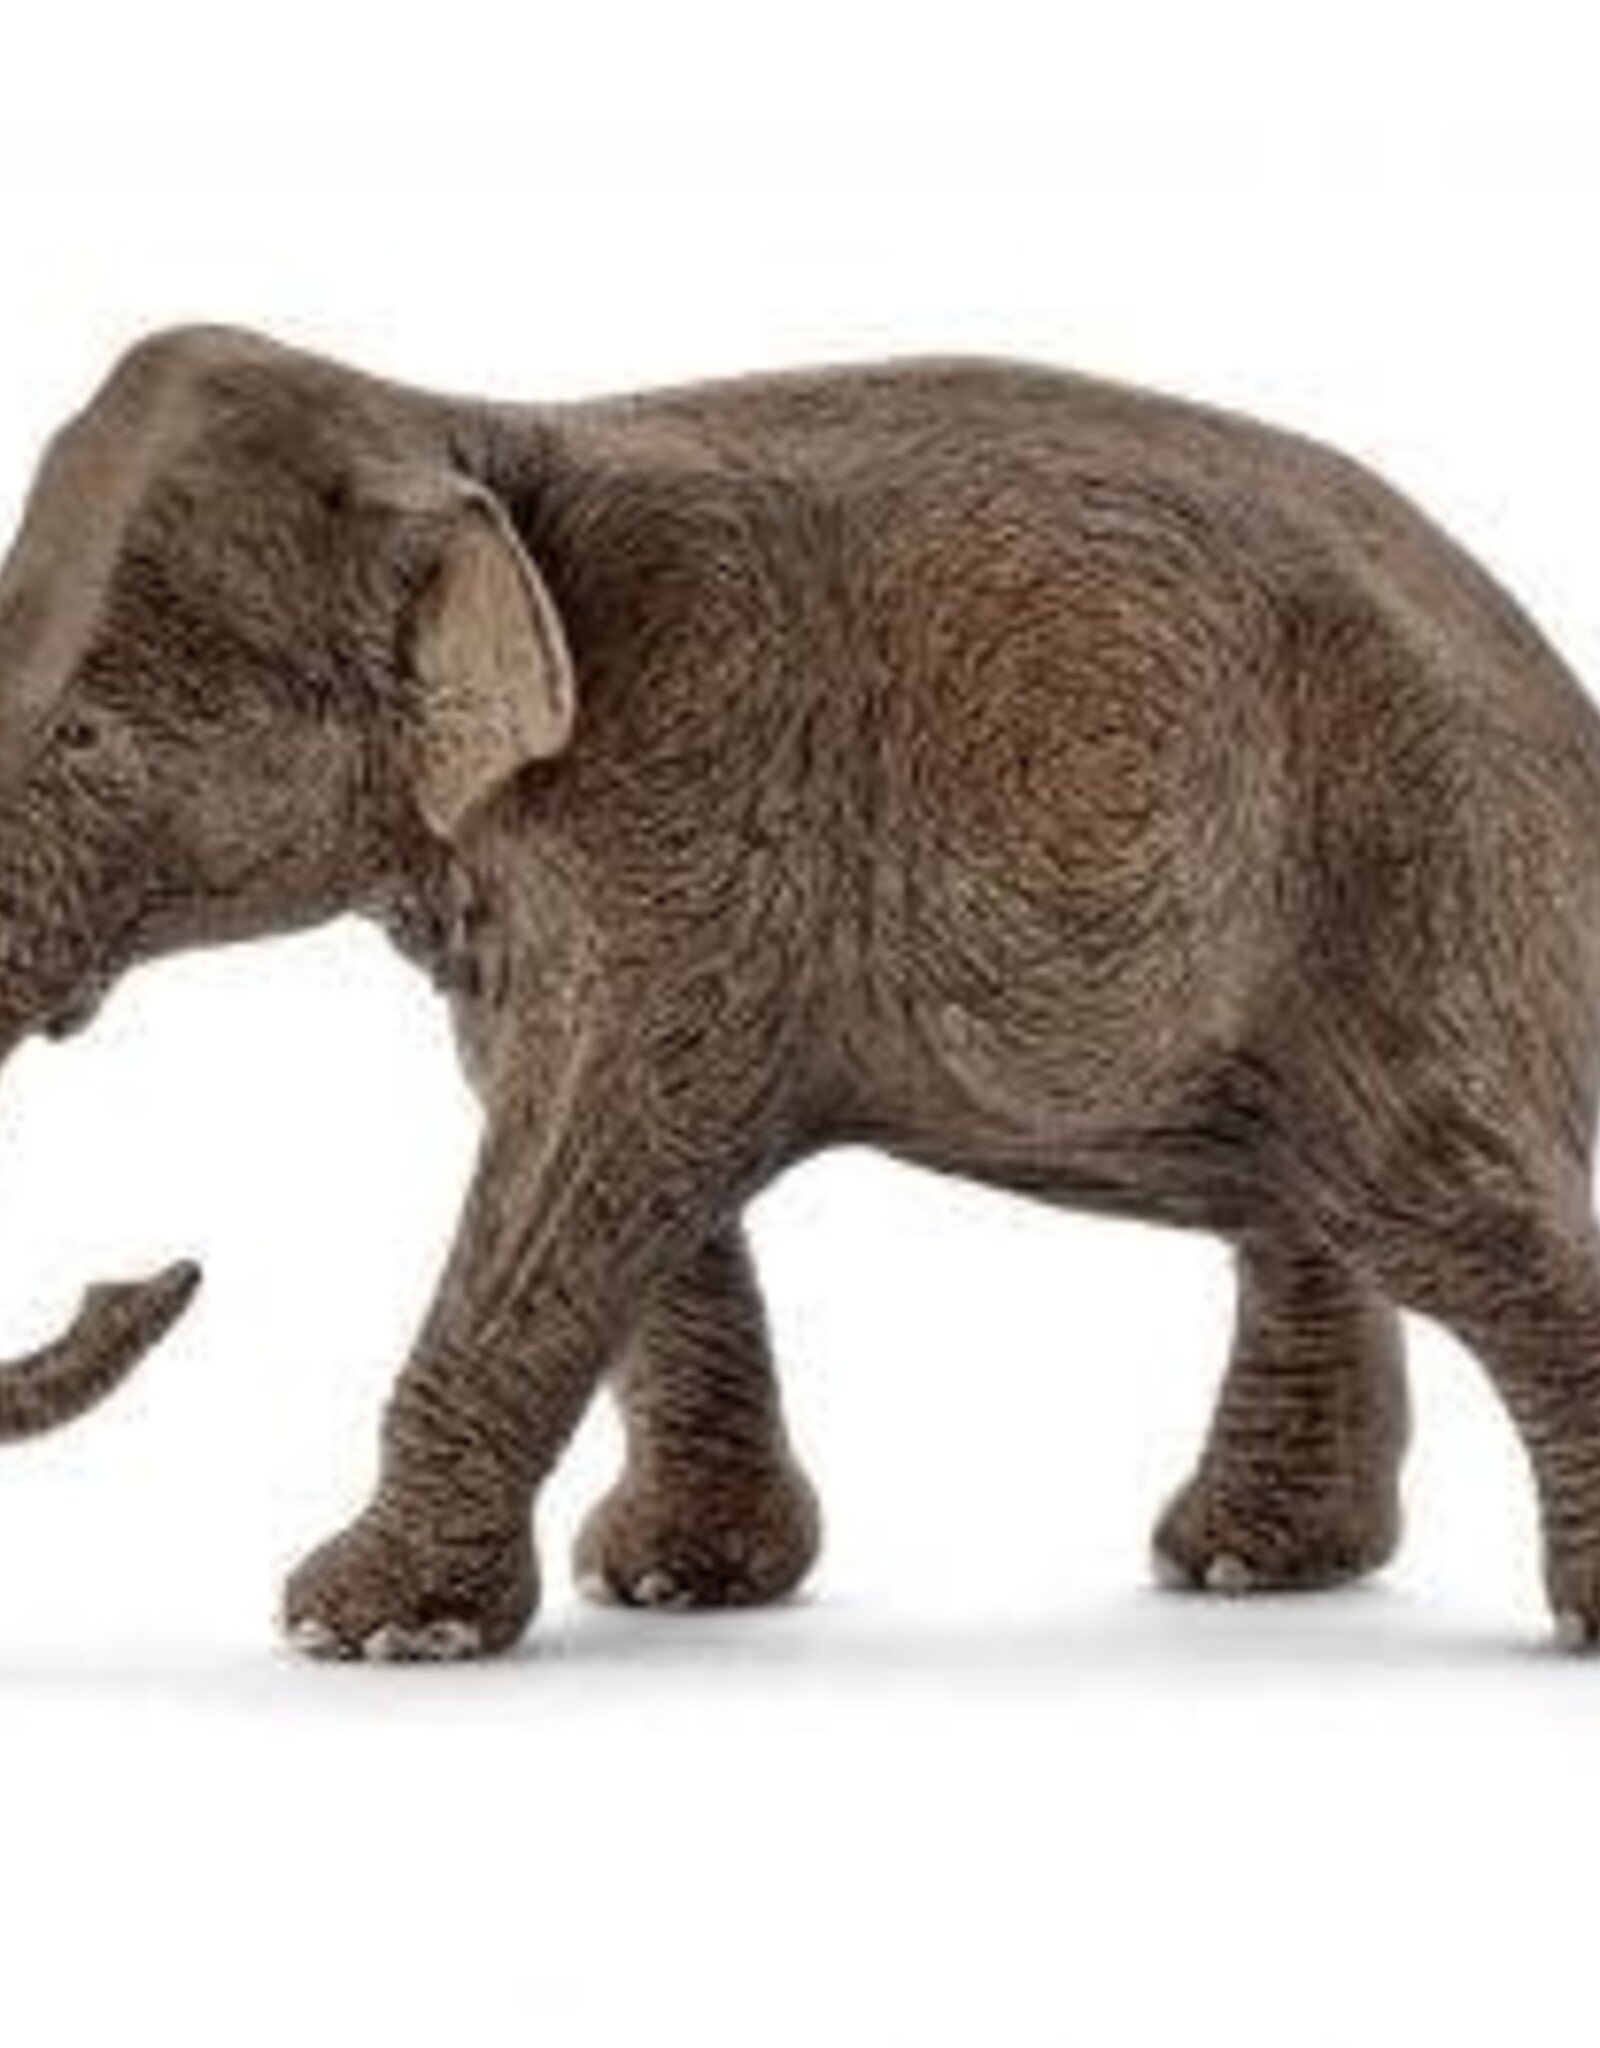 Schleich Asian Elephant female 2016